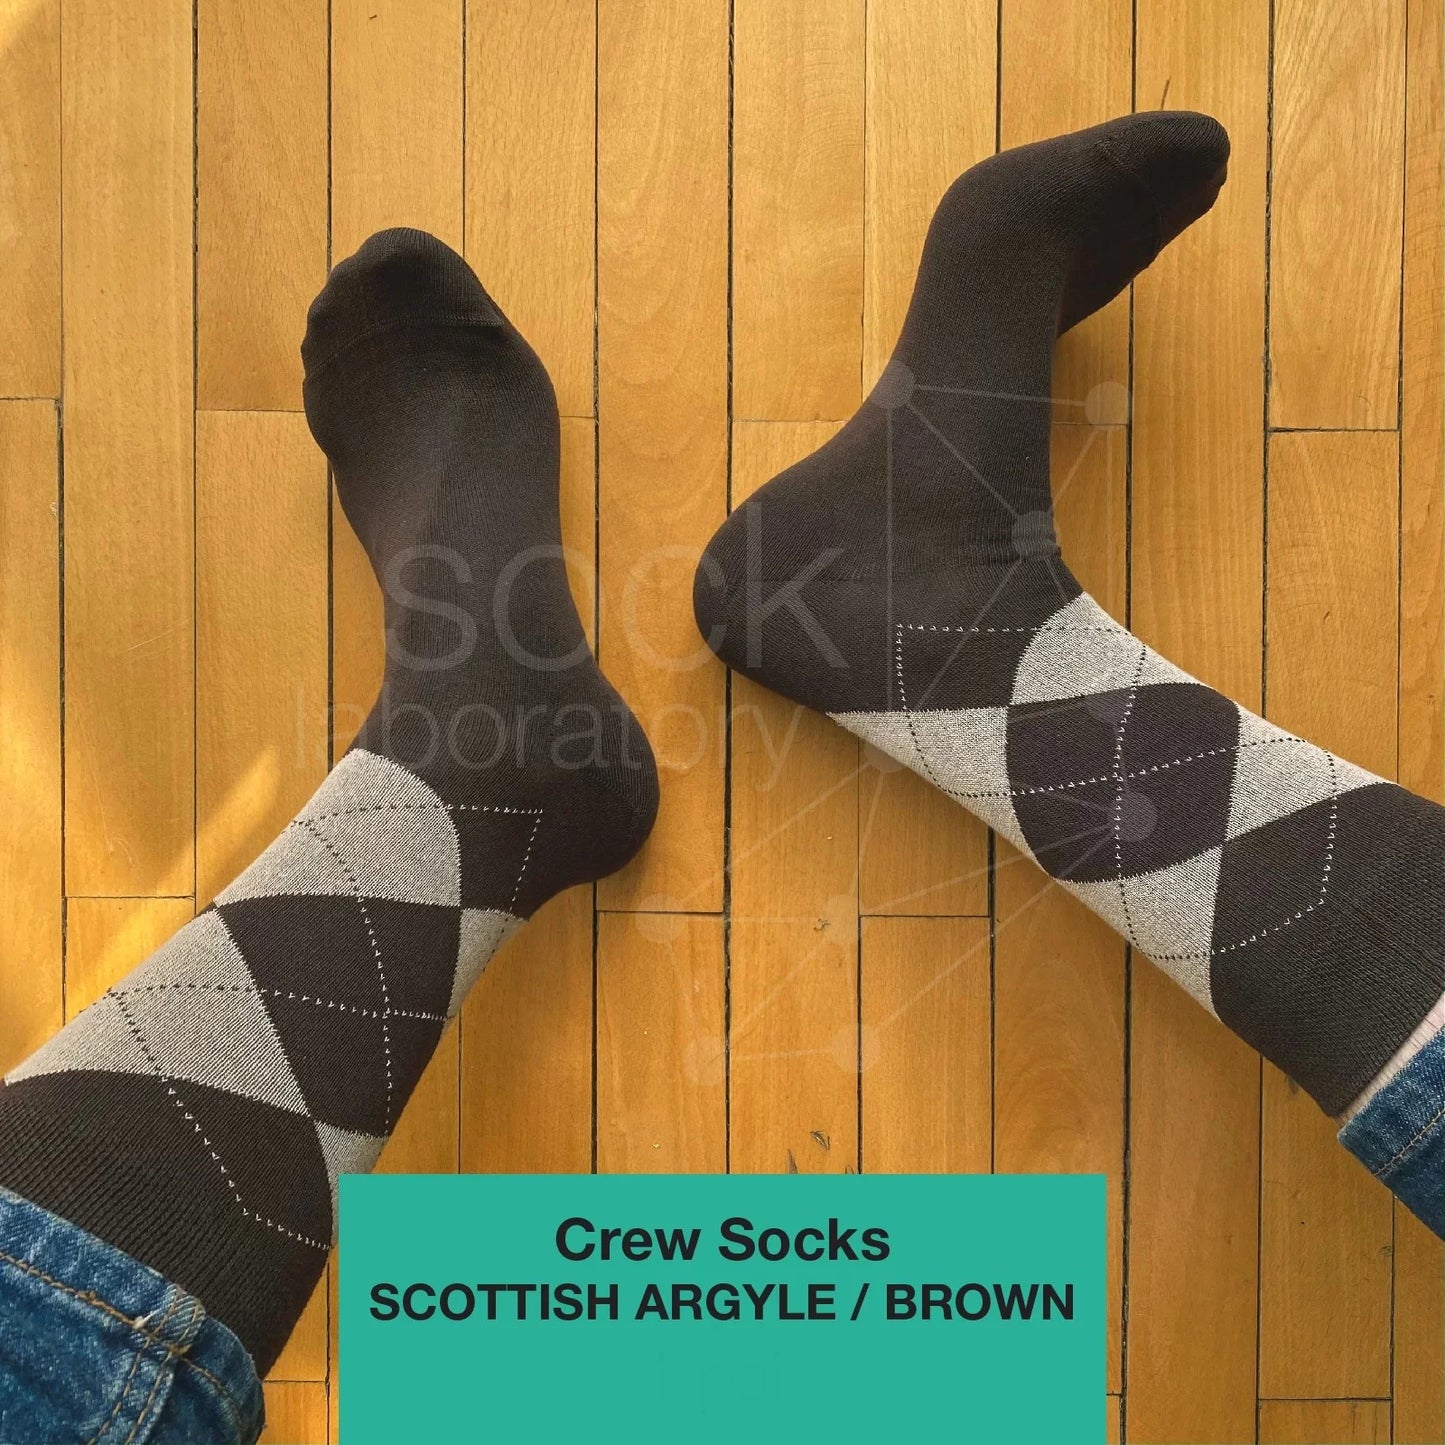 CREW SOCKS - Set of 3 / Brown / Beige / Scottish Argyle in Brown & Beige